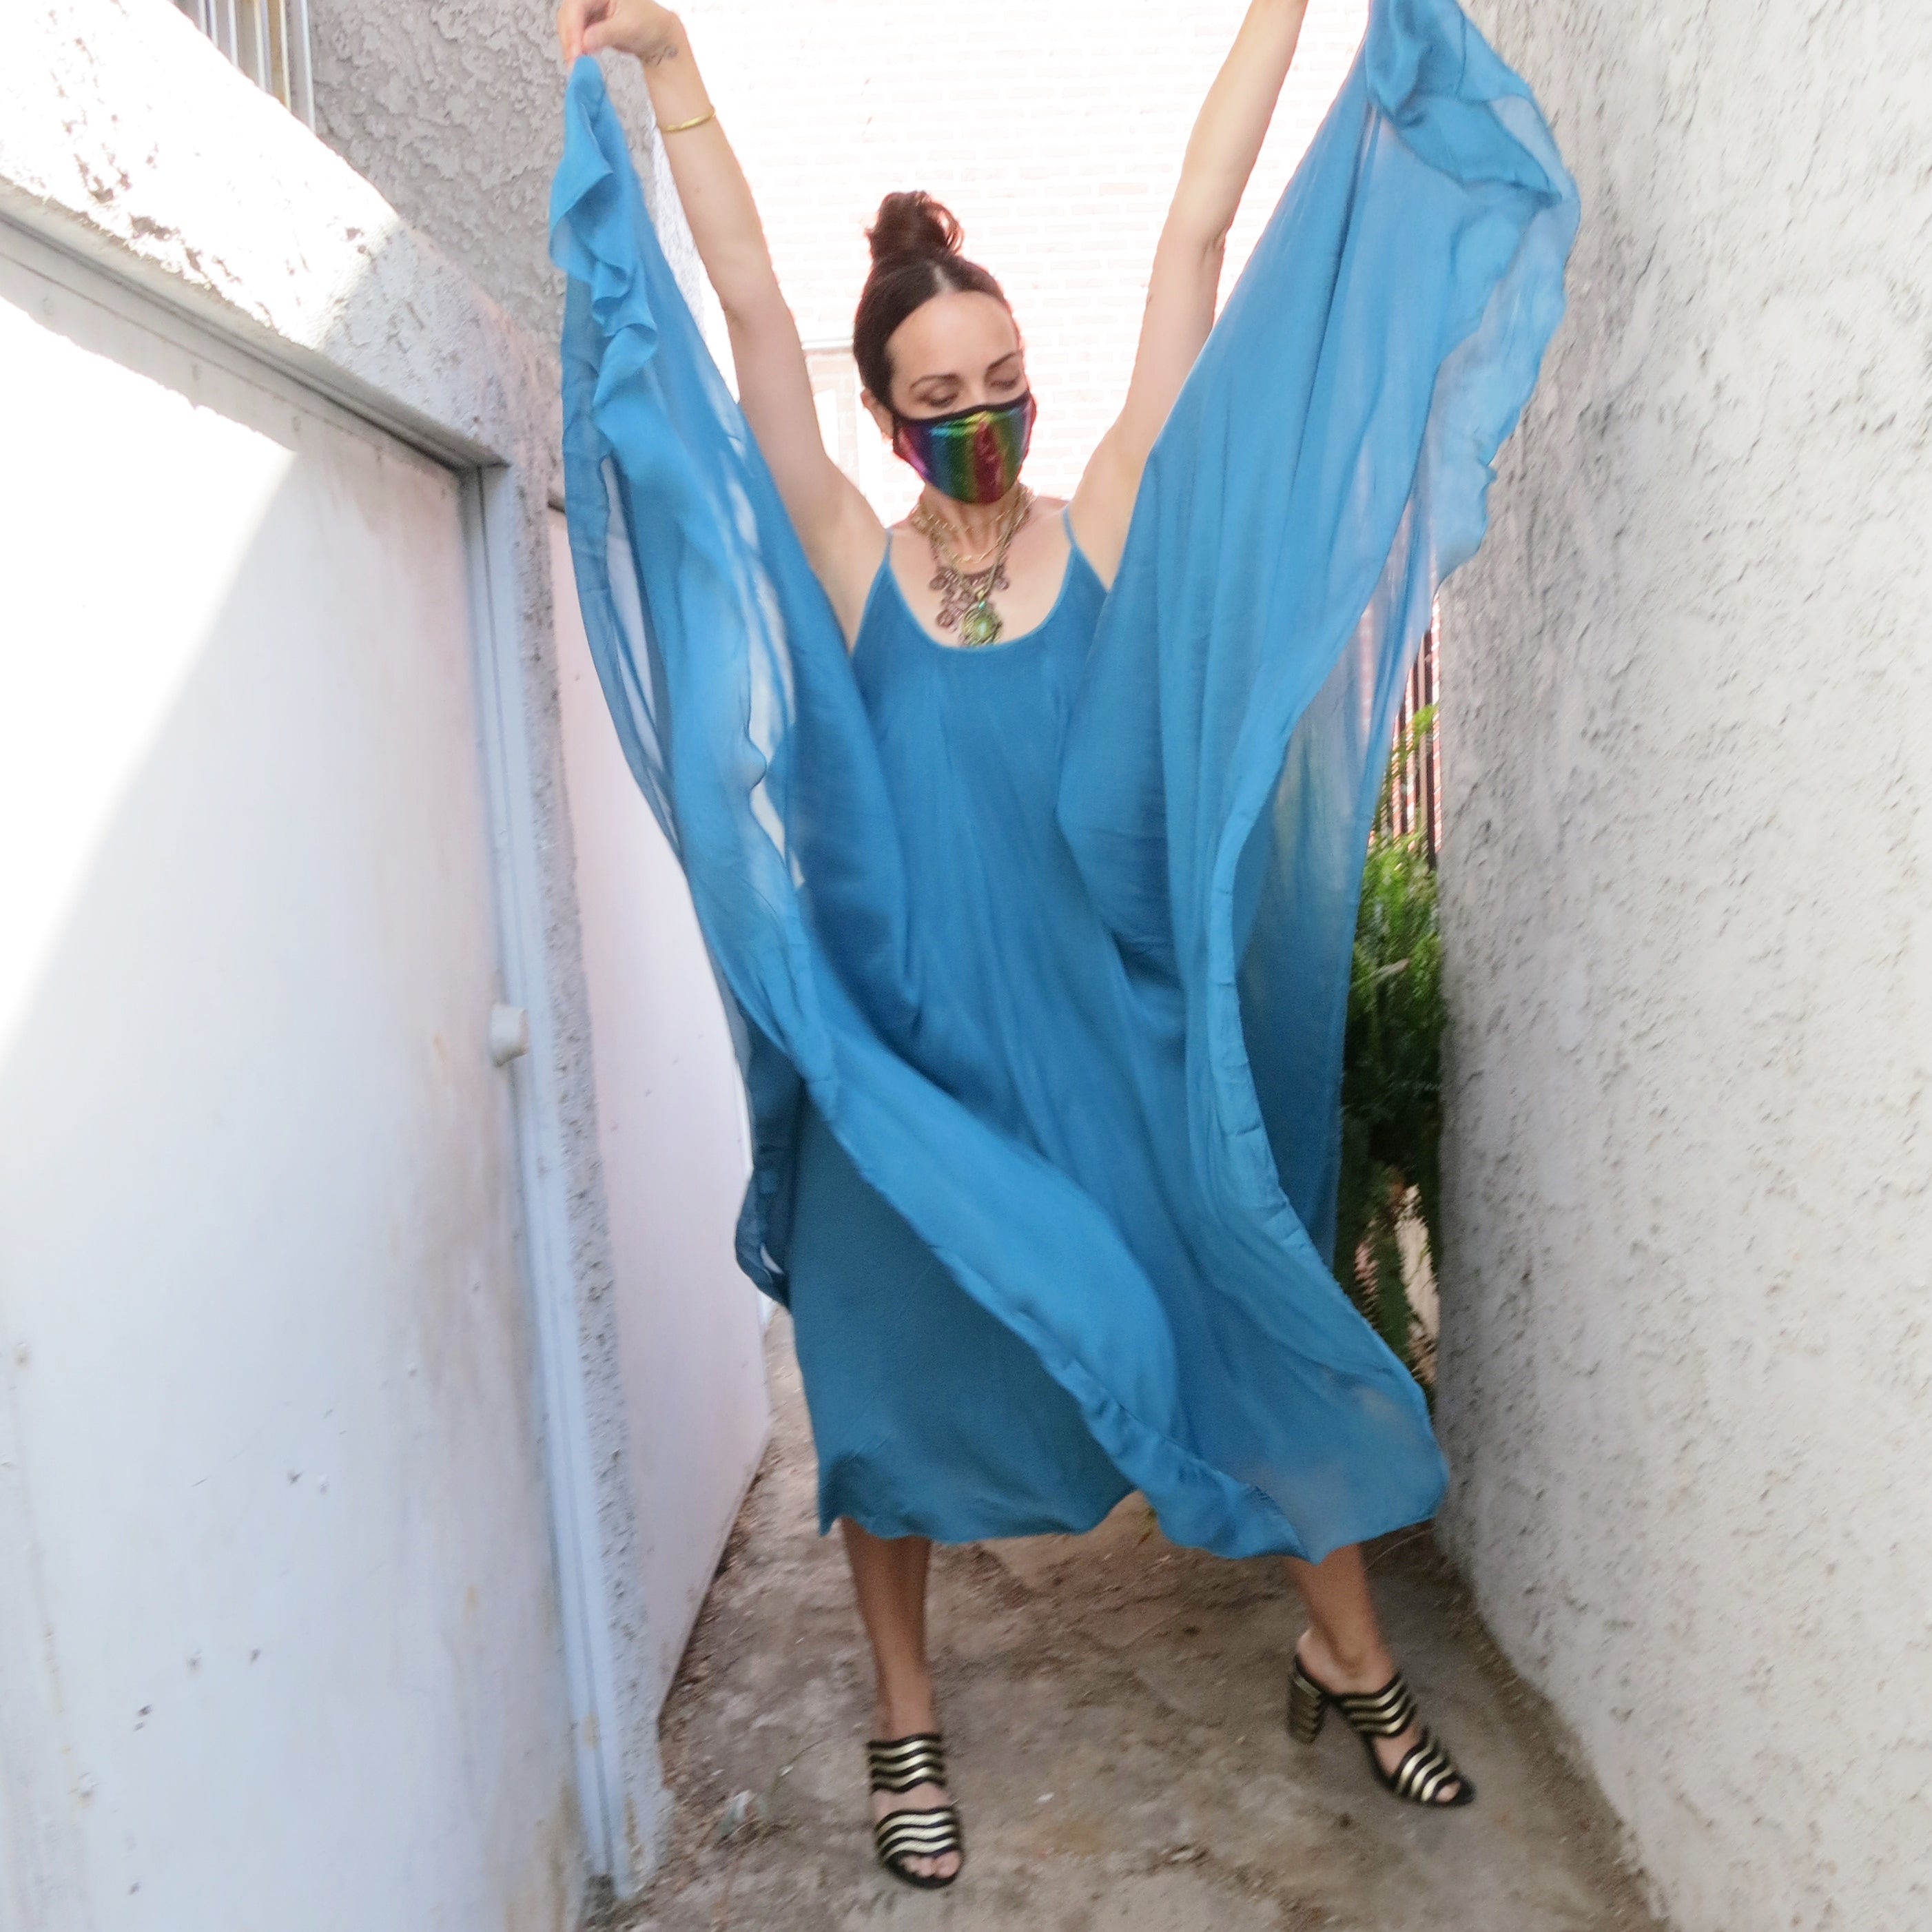 Free as a bird silk dress